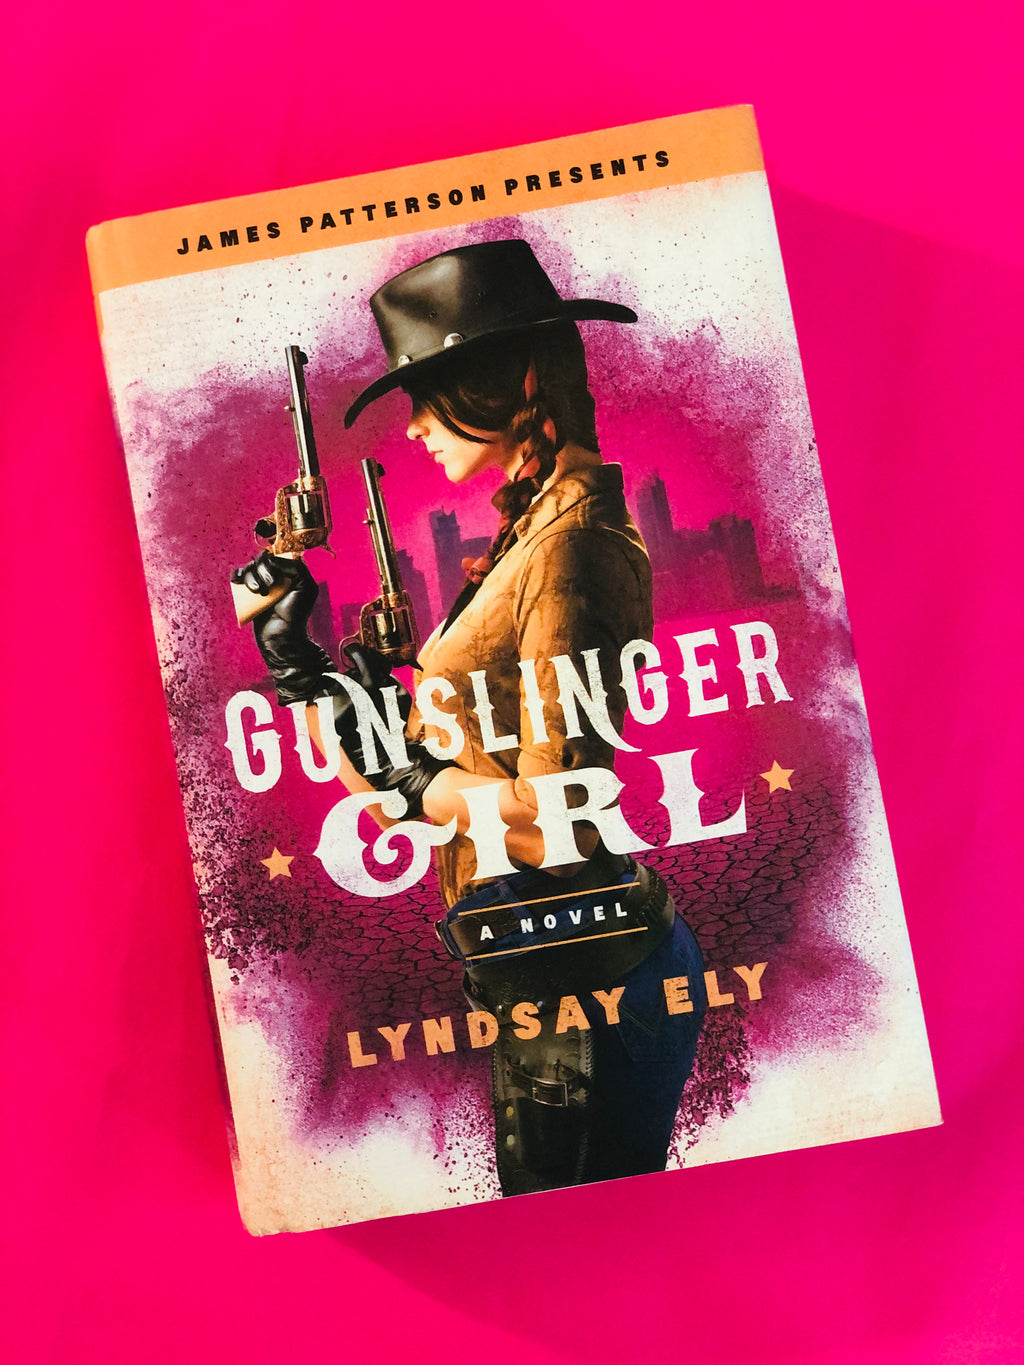 Gunslinger Girl- By James Patterson presents Lindsay Ely